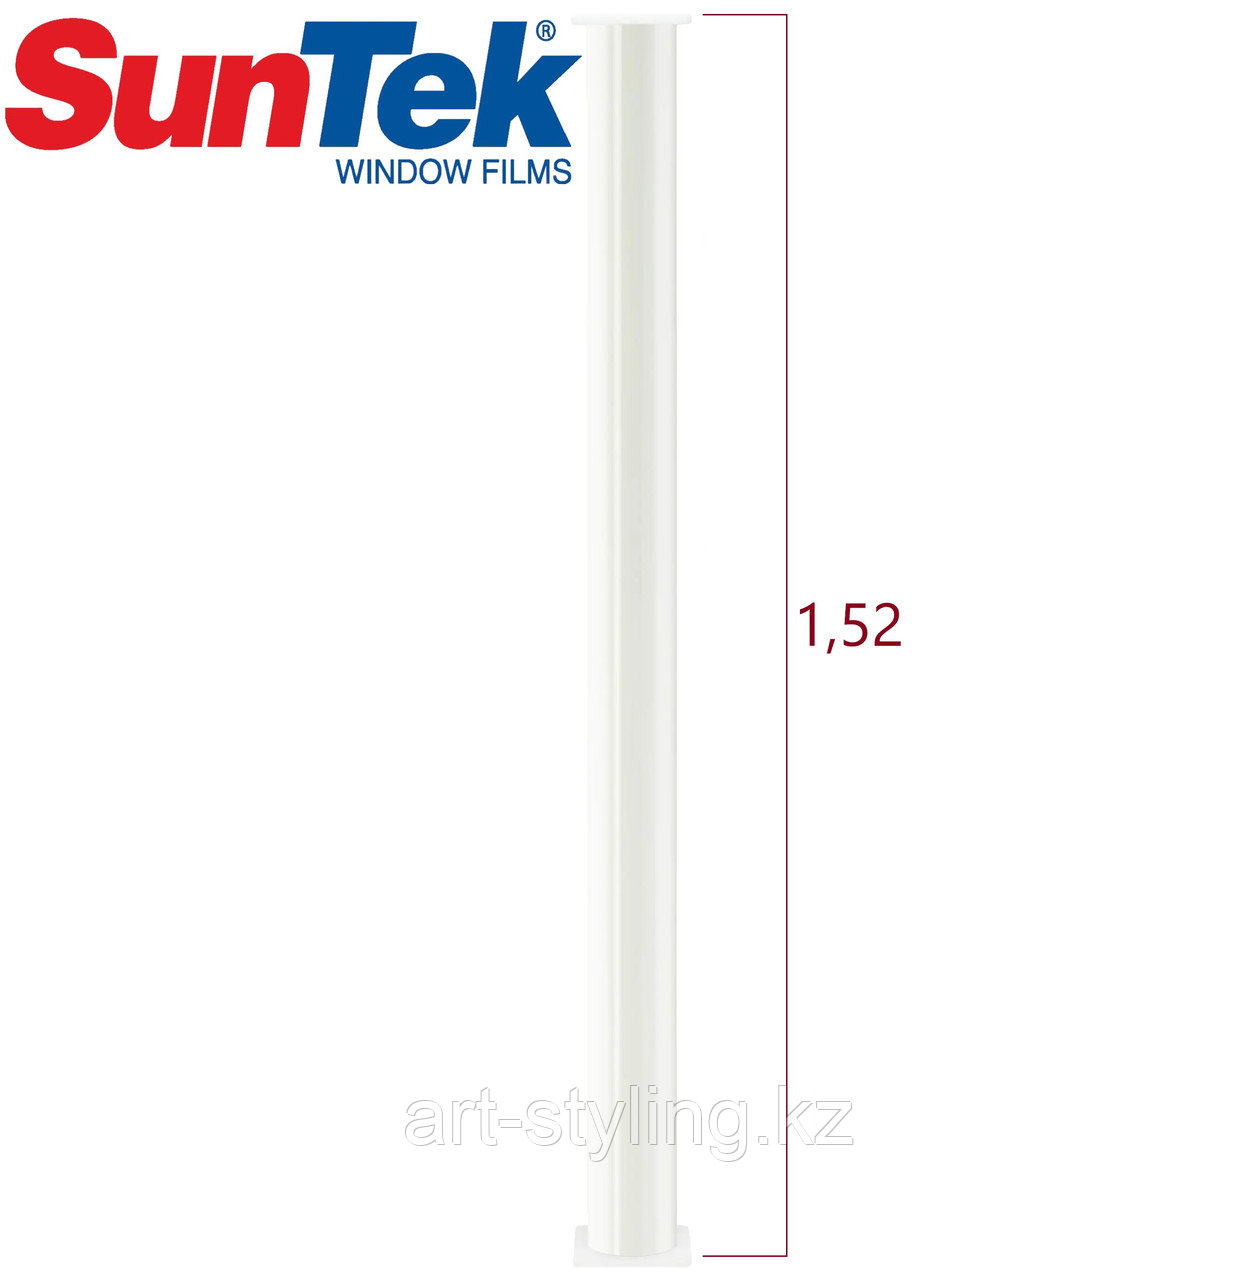 SunTek – полиуретановая пленка, рулон 1,52*15,2м